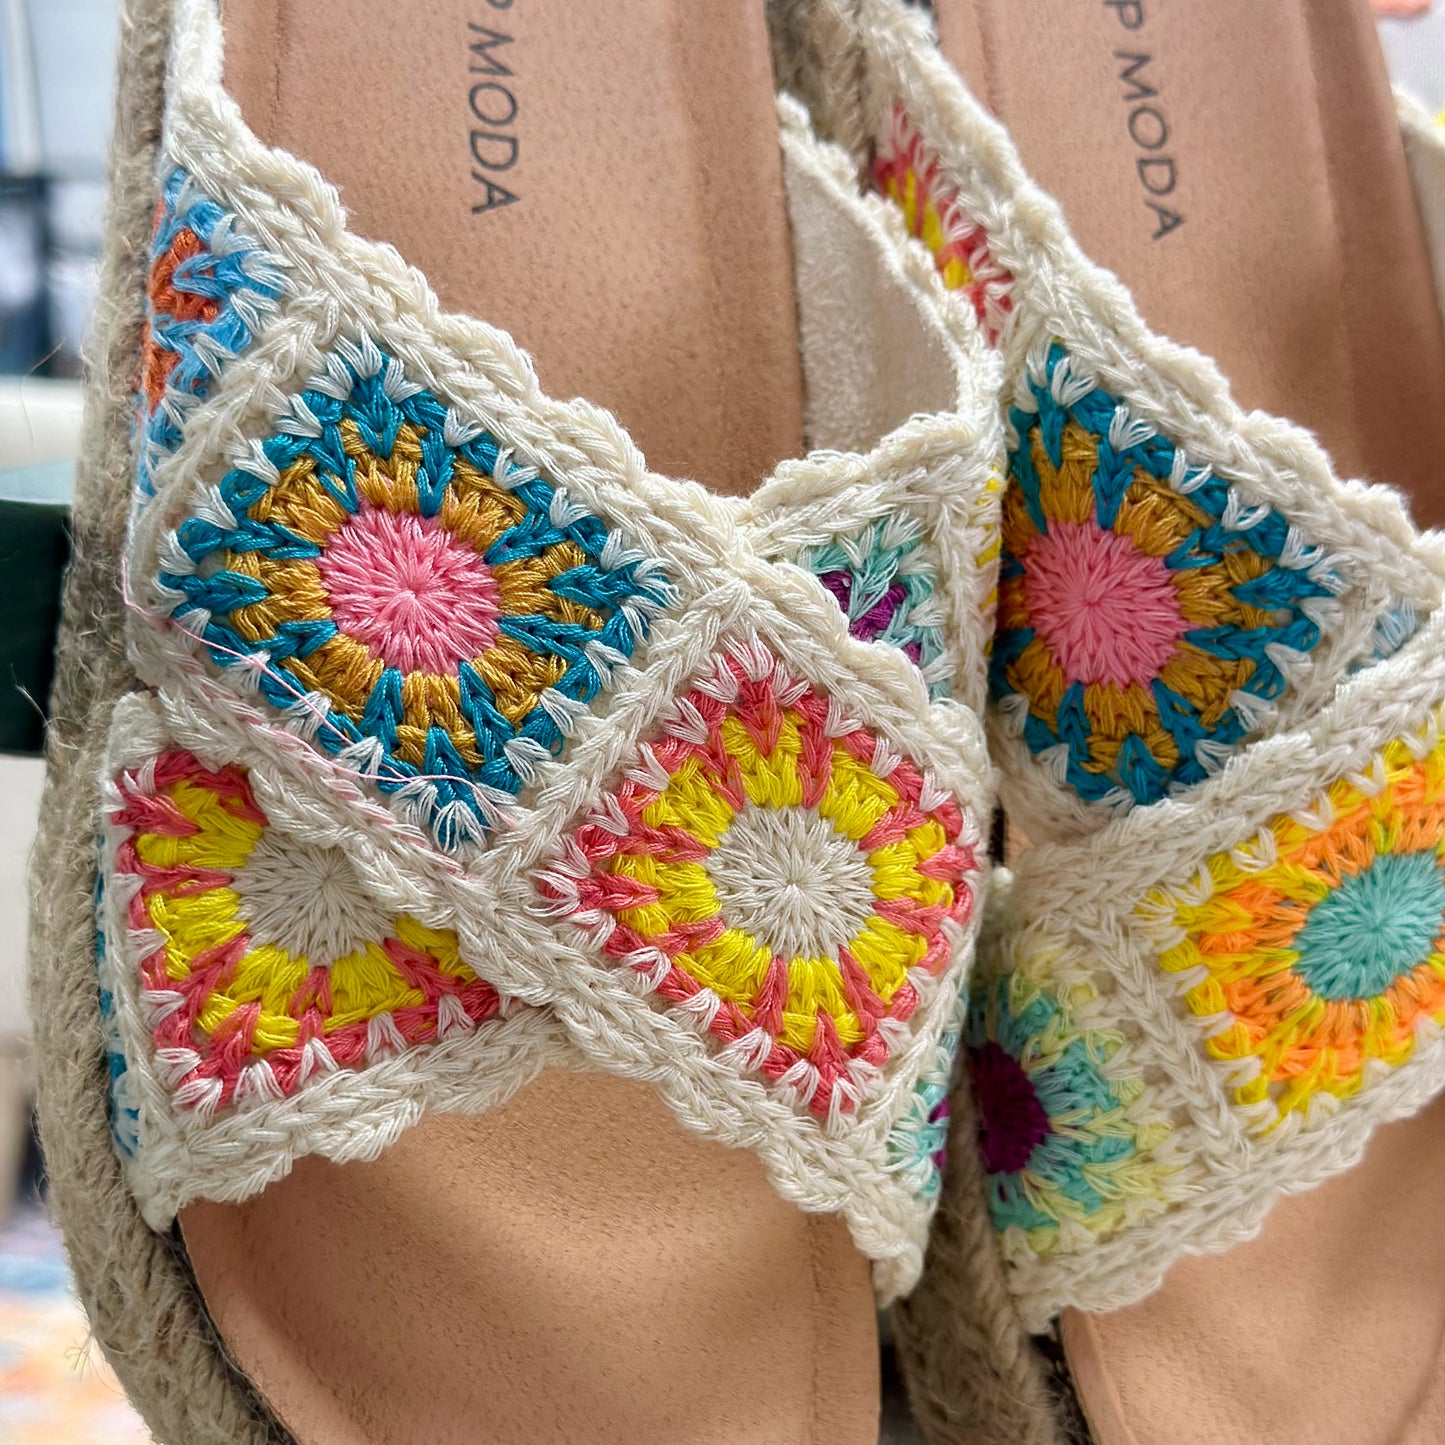 Athens Crochet Sandals